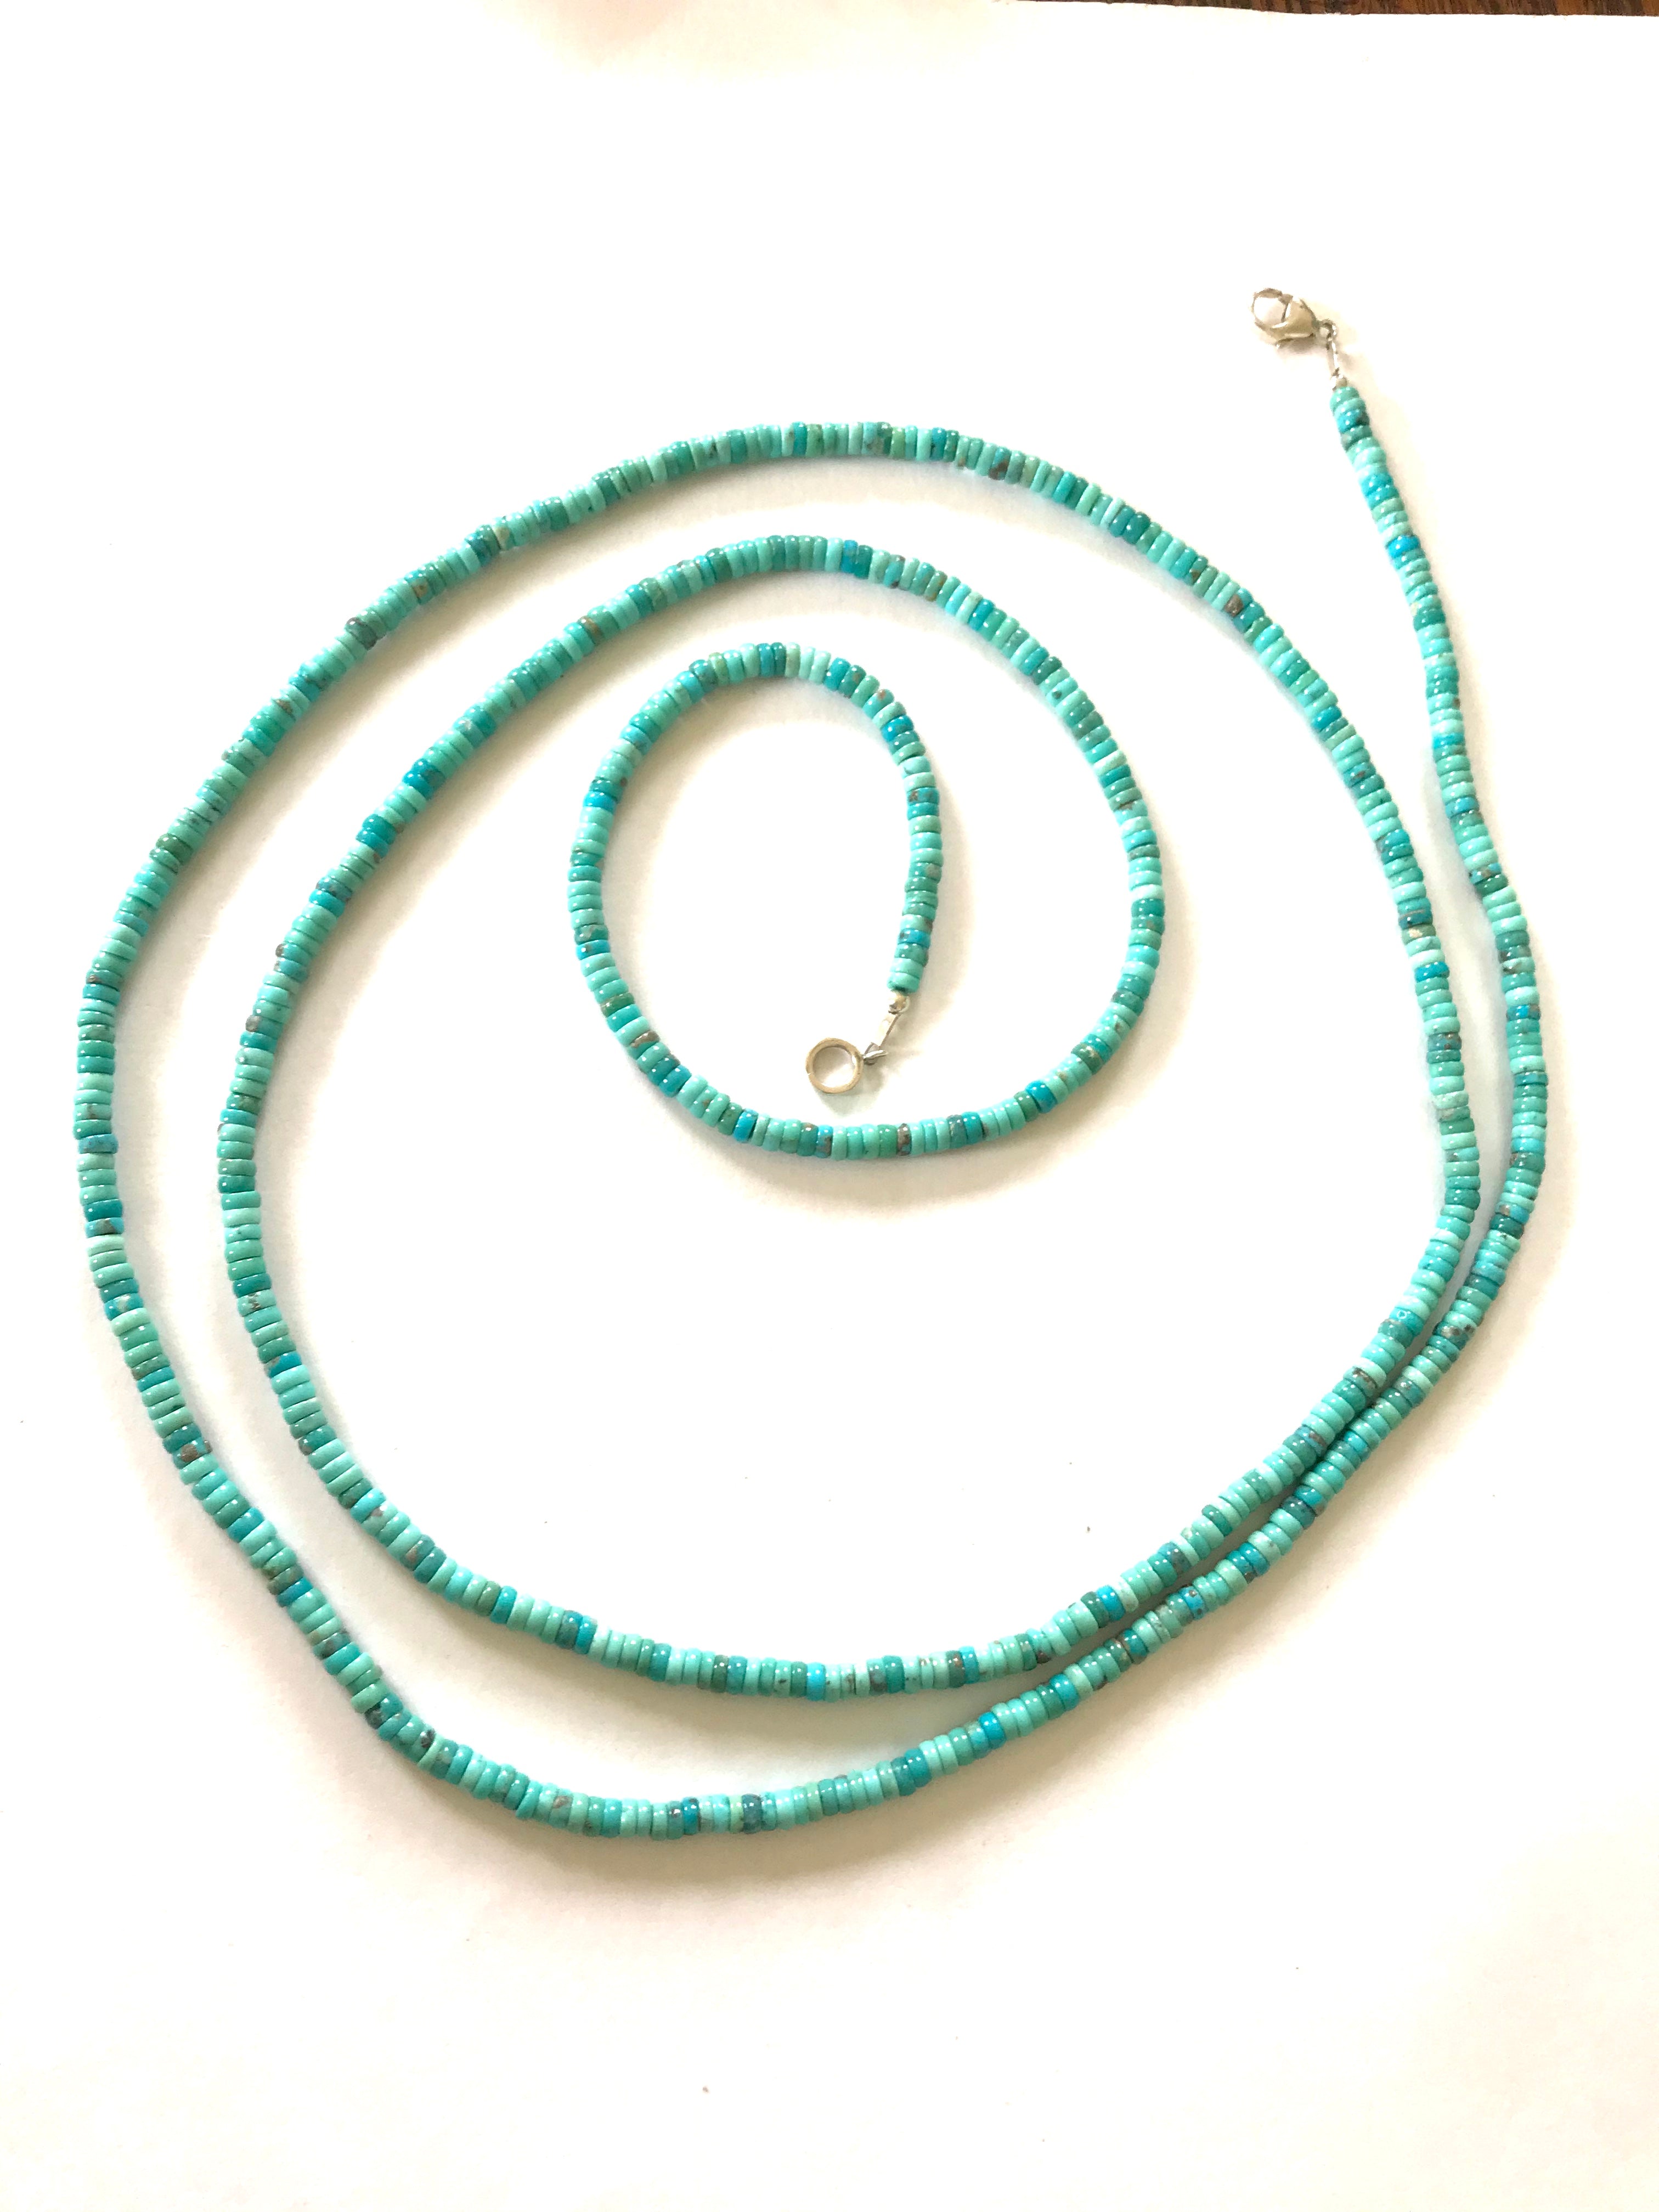 Amazing long turquoise necklace